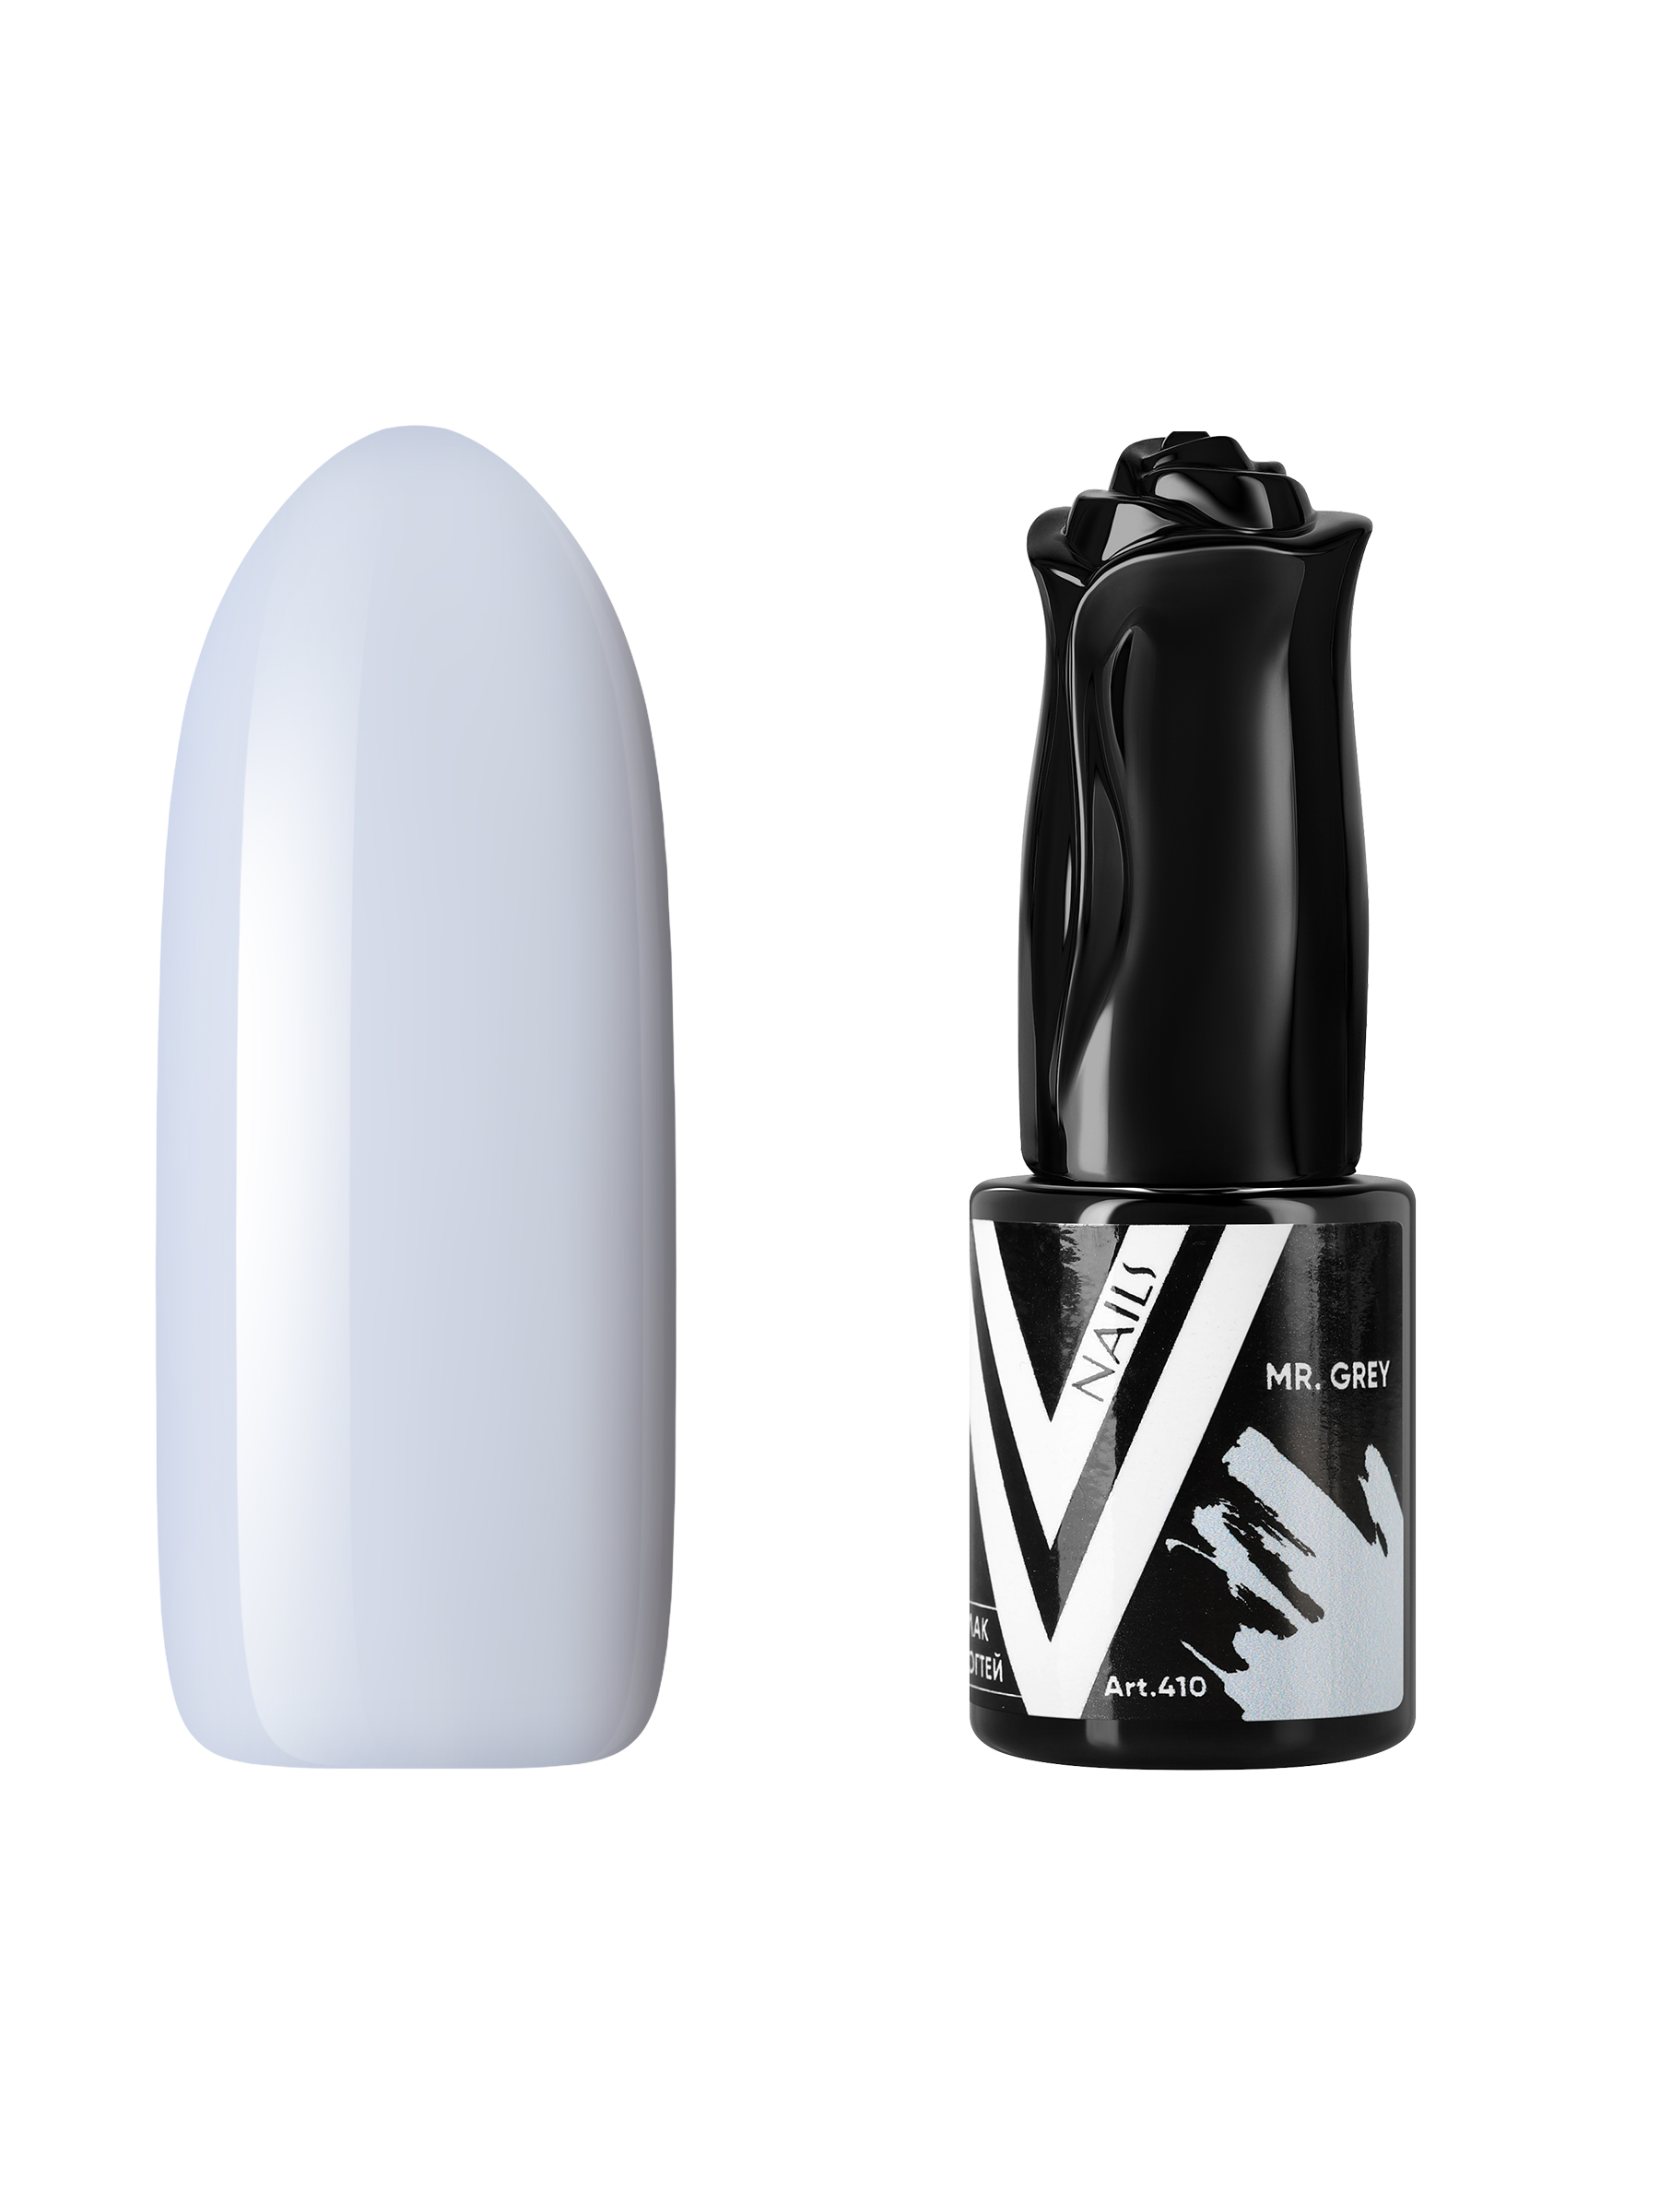 Гель-лак Vogue Nails светло-серый без эффектов плотный 10 мл коврик салона skyway suzuki sx 4 2006 левый руль 4шт eva серый s01706465